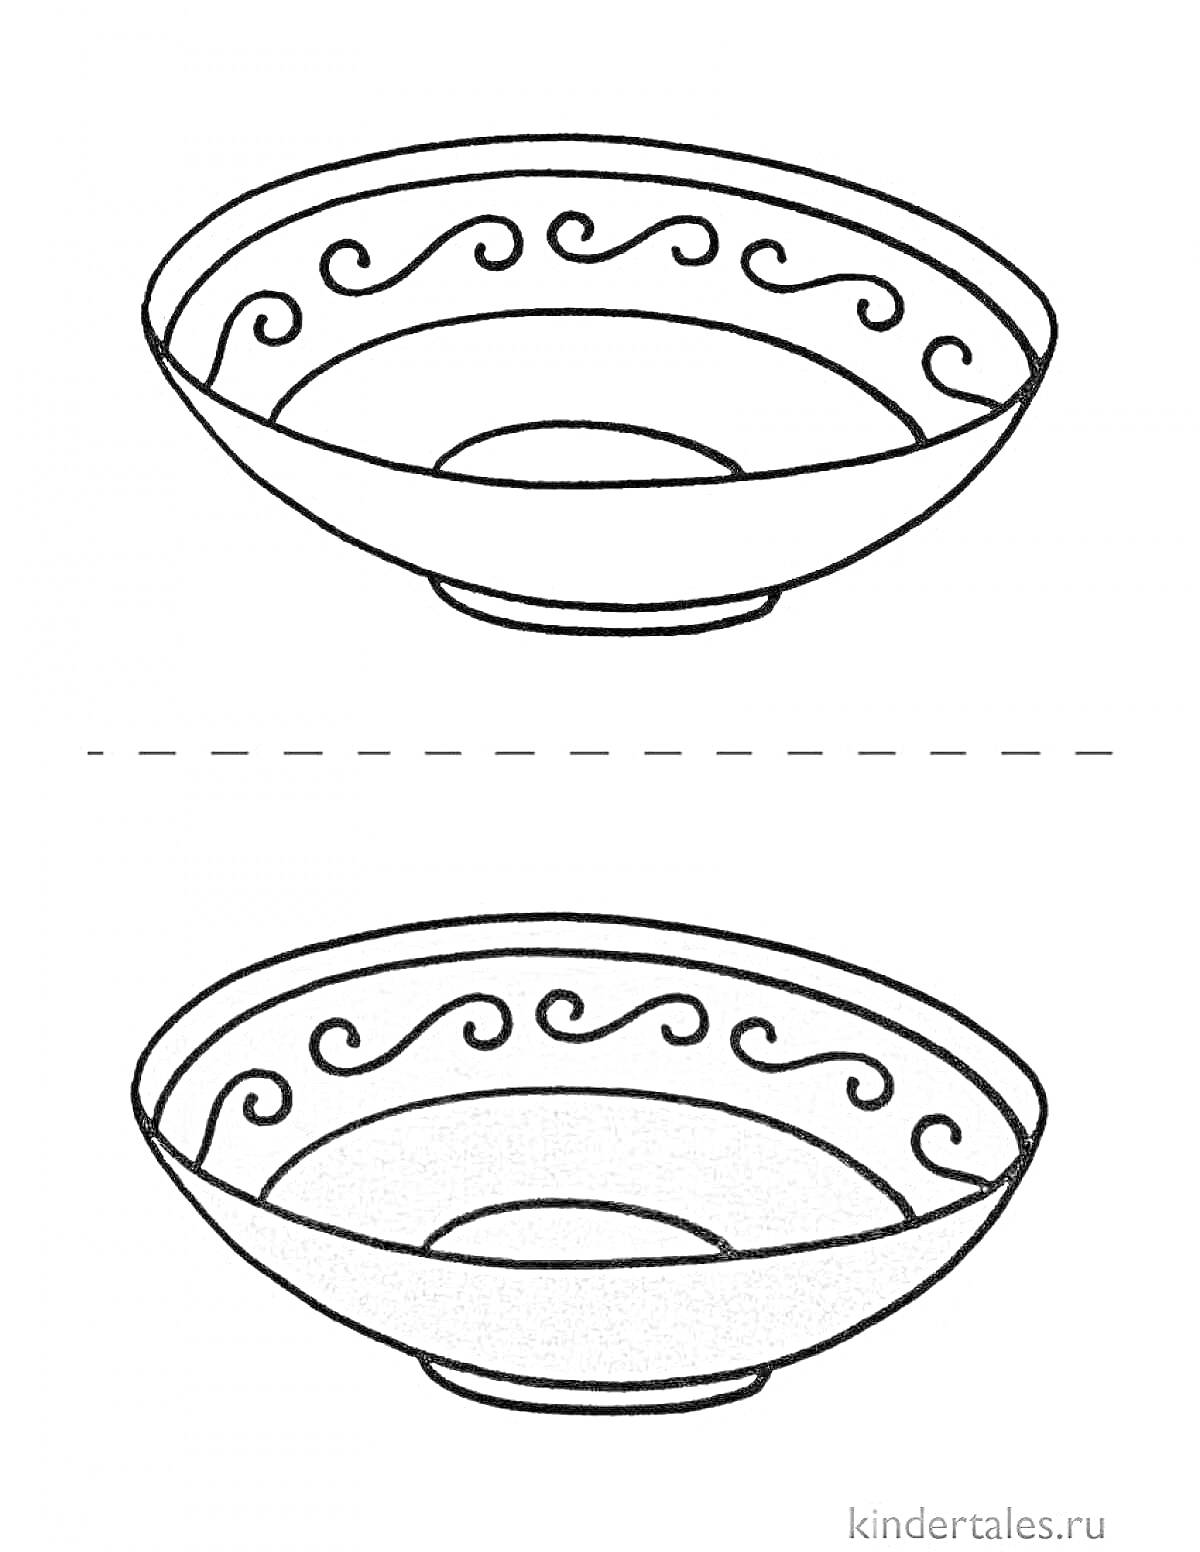 Раскраска Тарелка с волнистым орнаментом по краям